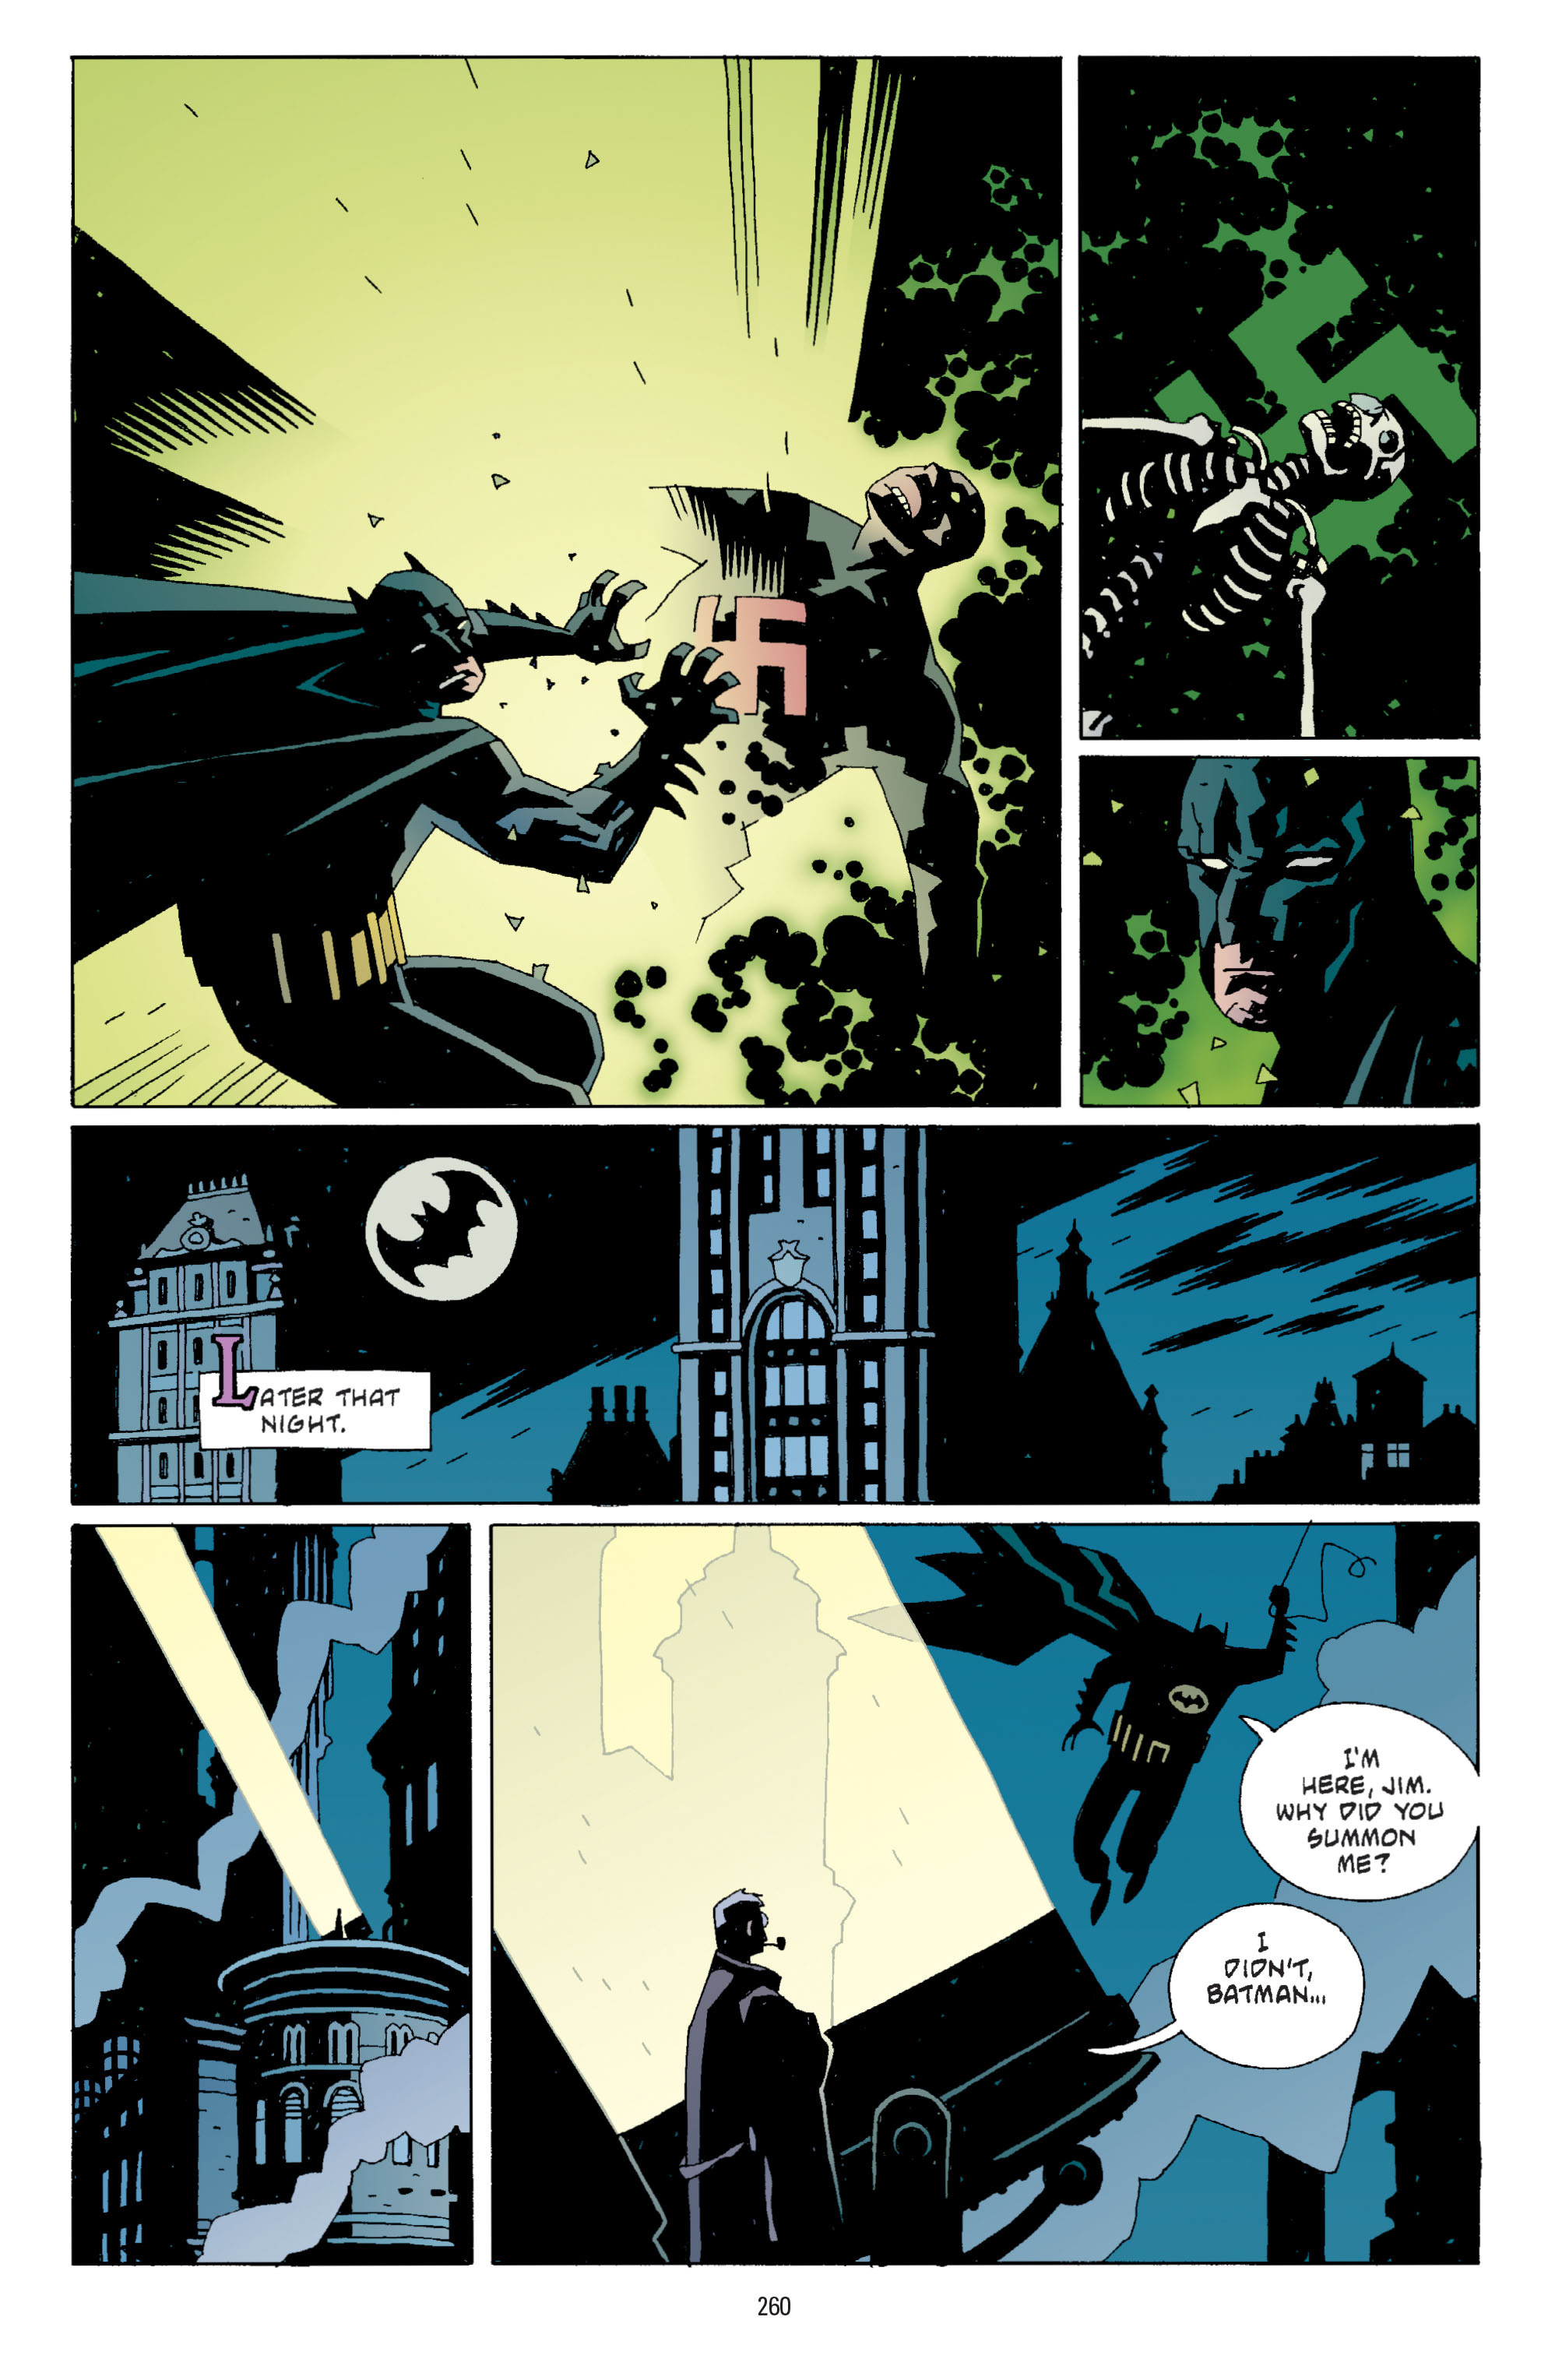 DC Comics/Dark Horse Comics: Justice League Full #1 - English 251